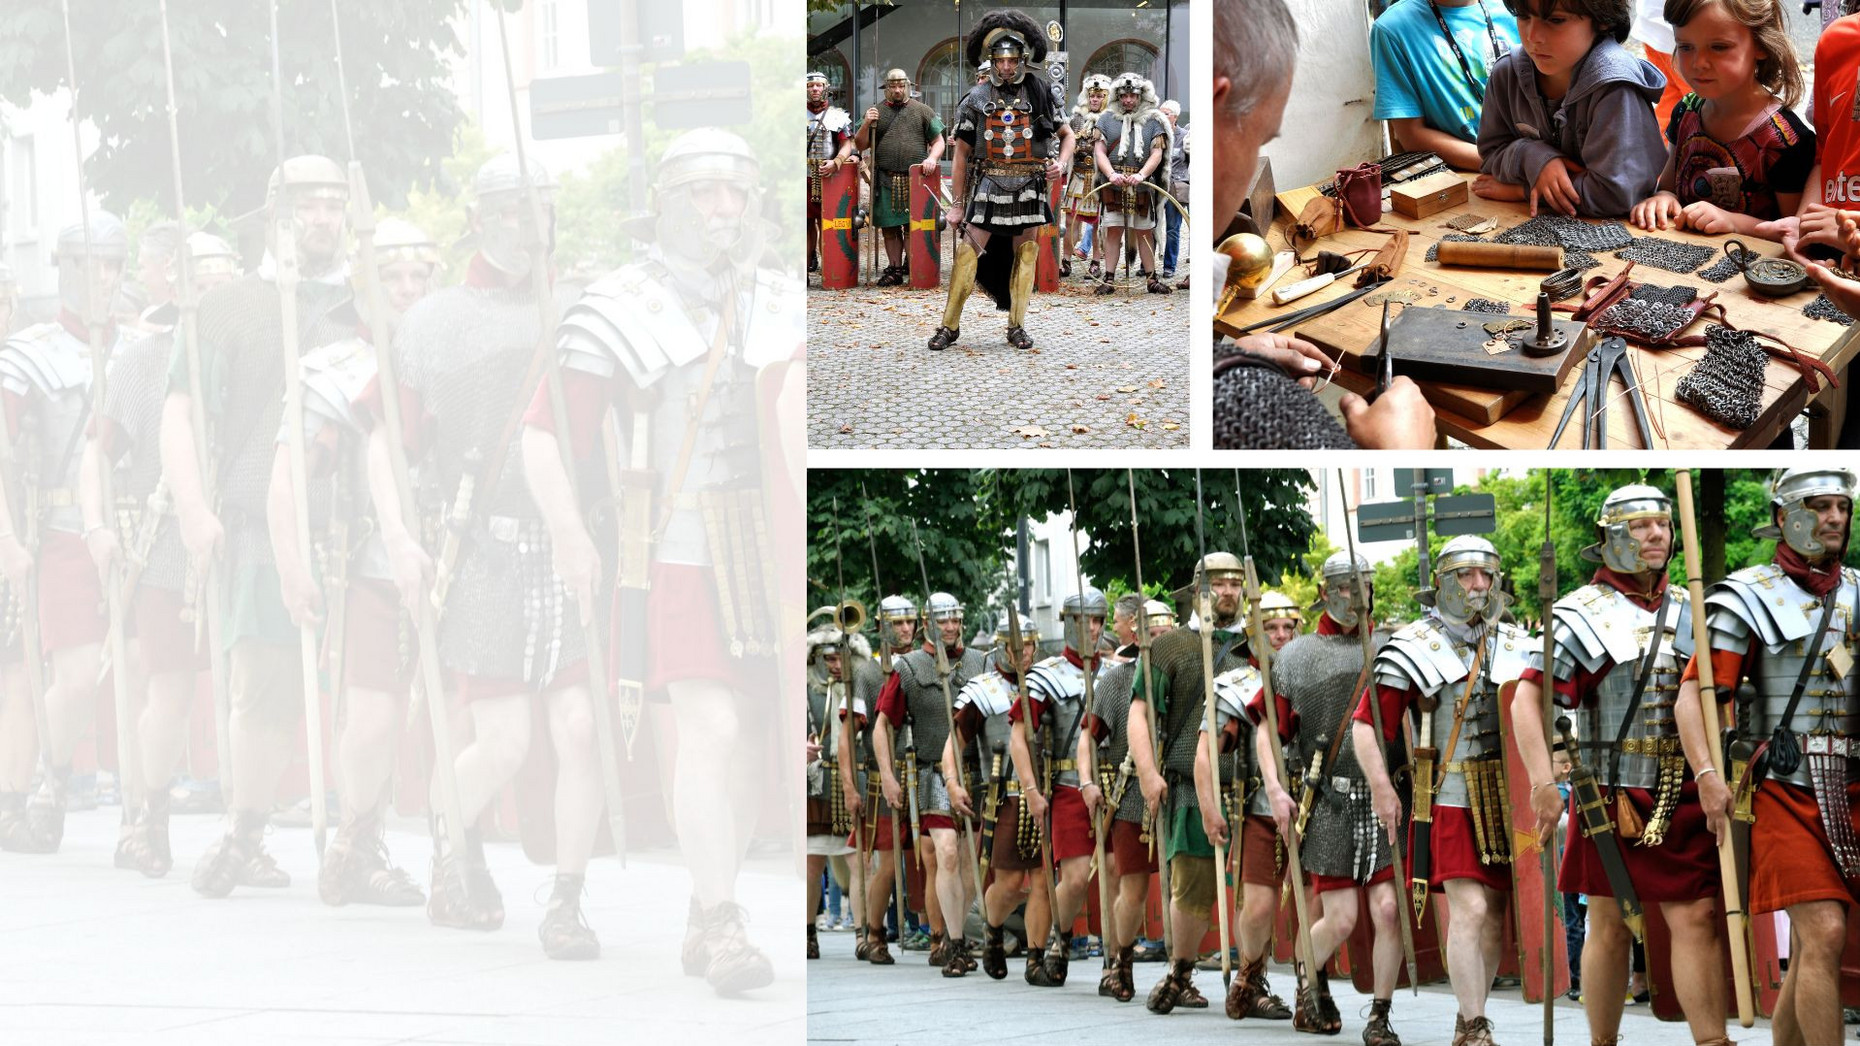 Gruppen als Römer verkleidet und spielende Kinder